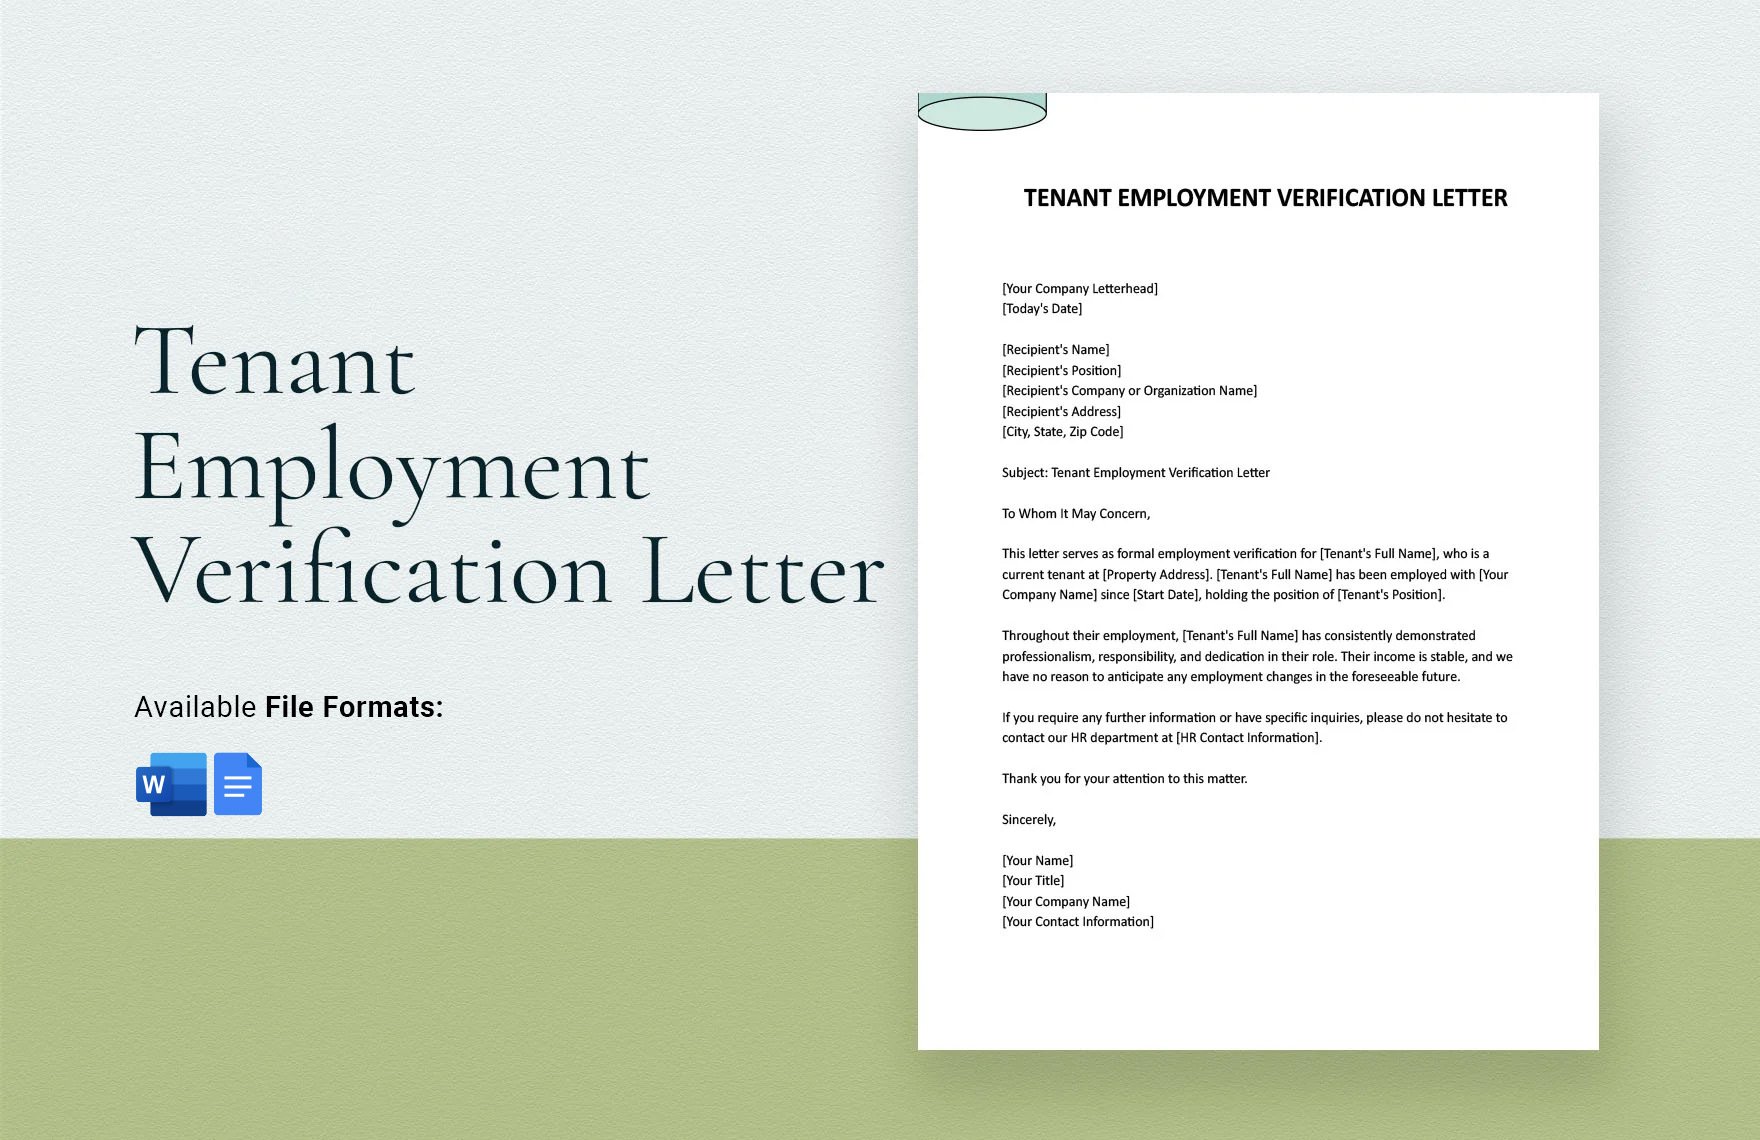 Tenant Employment Verification Letter